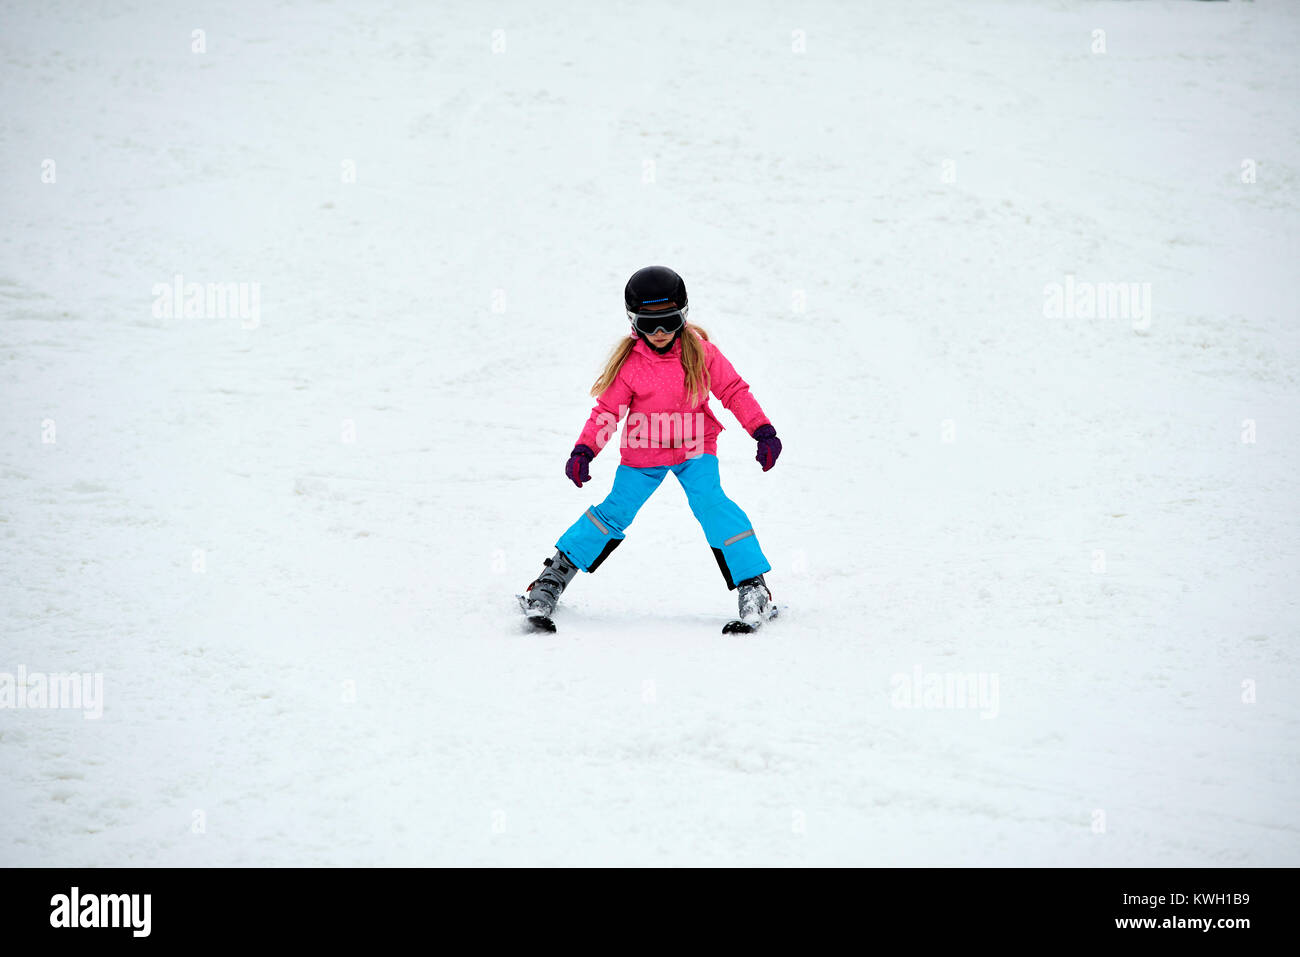 Niña en las pistas de esquí con cascos y gafas de esquí Fotografía de stock  - Alamy